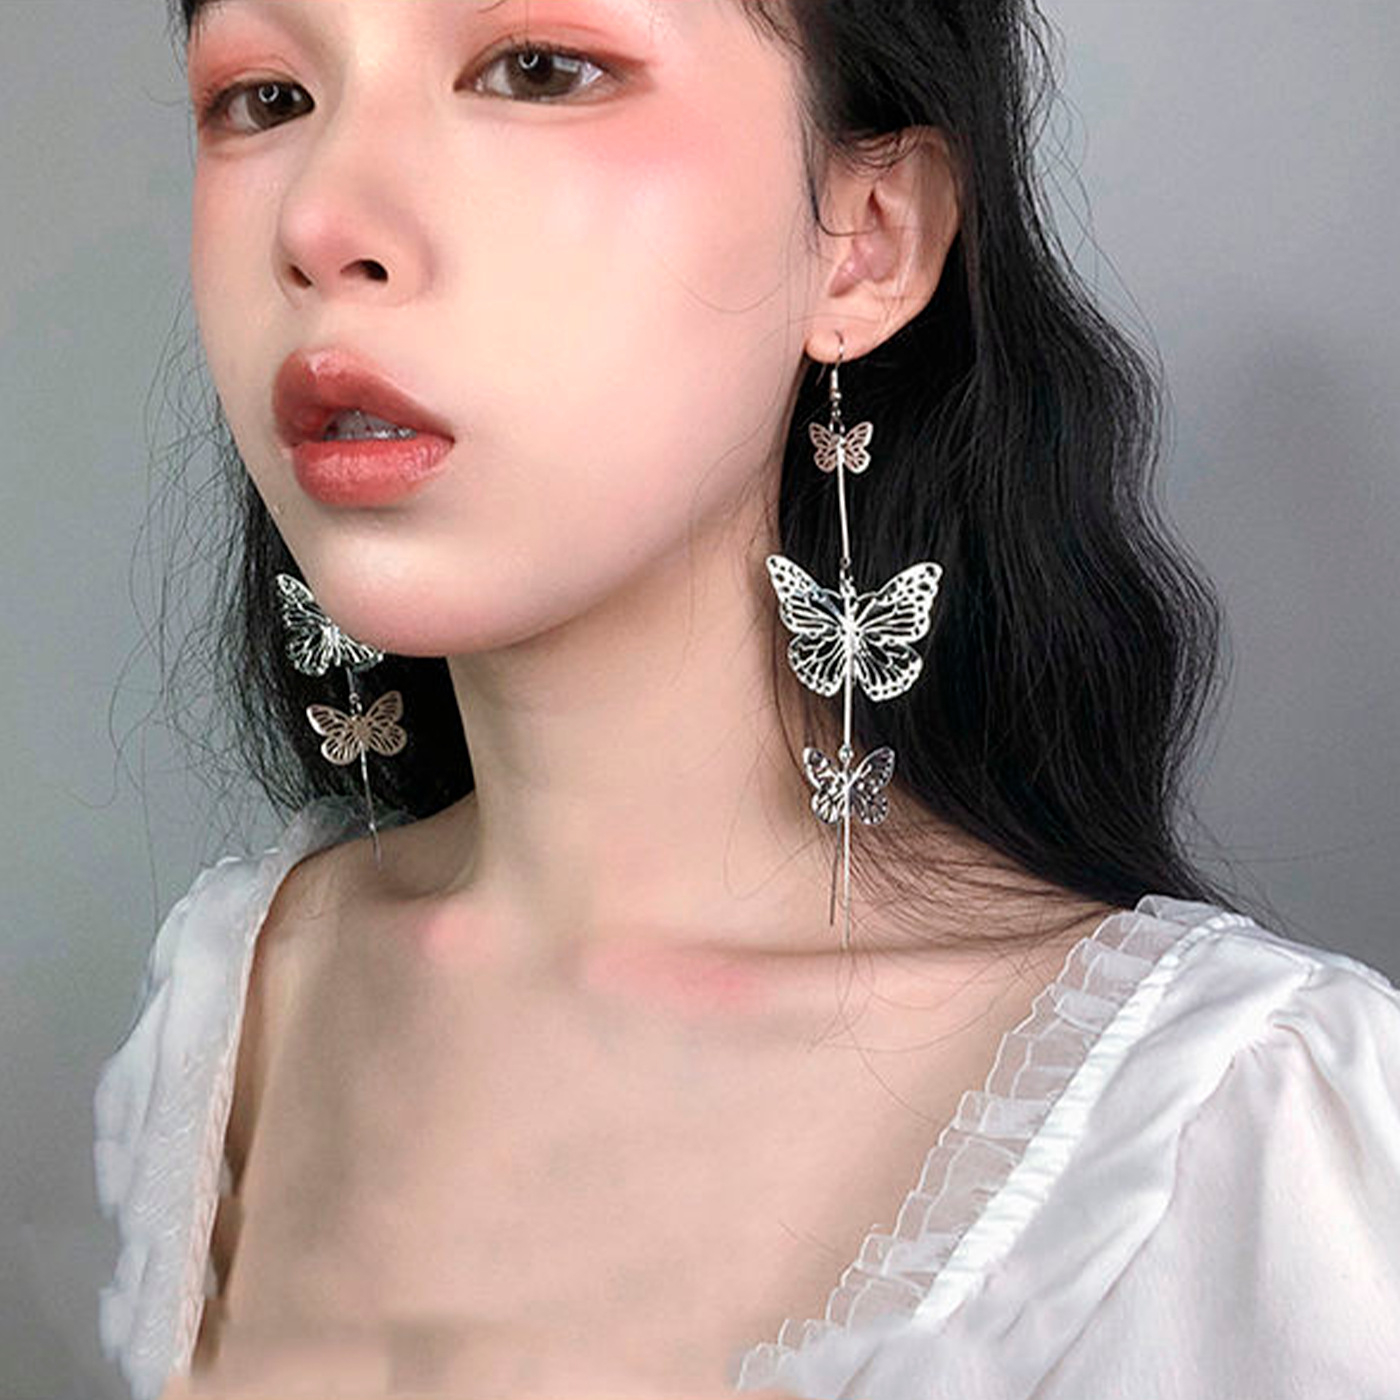 20200422 Butterfly Stud Earrings Fairy Lace Tassel Long Drop Dangle Earrings for Women Party Gifts Jewelry New Design